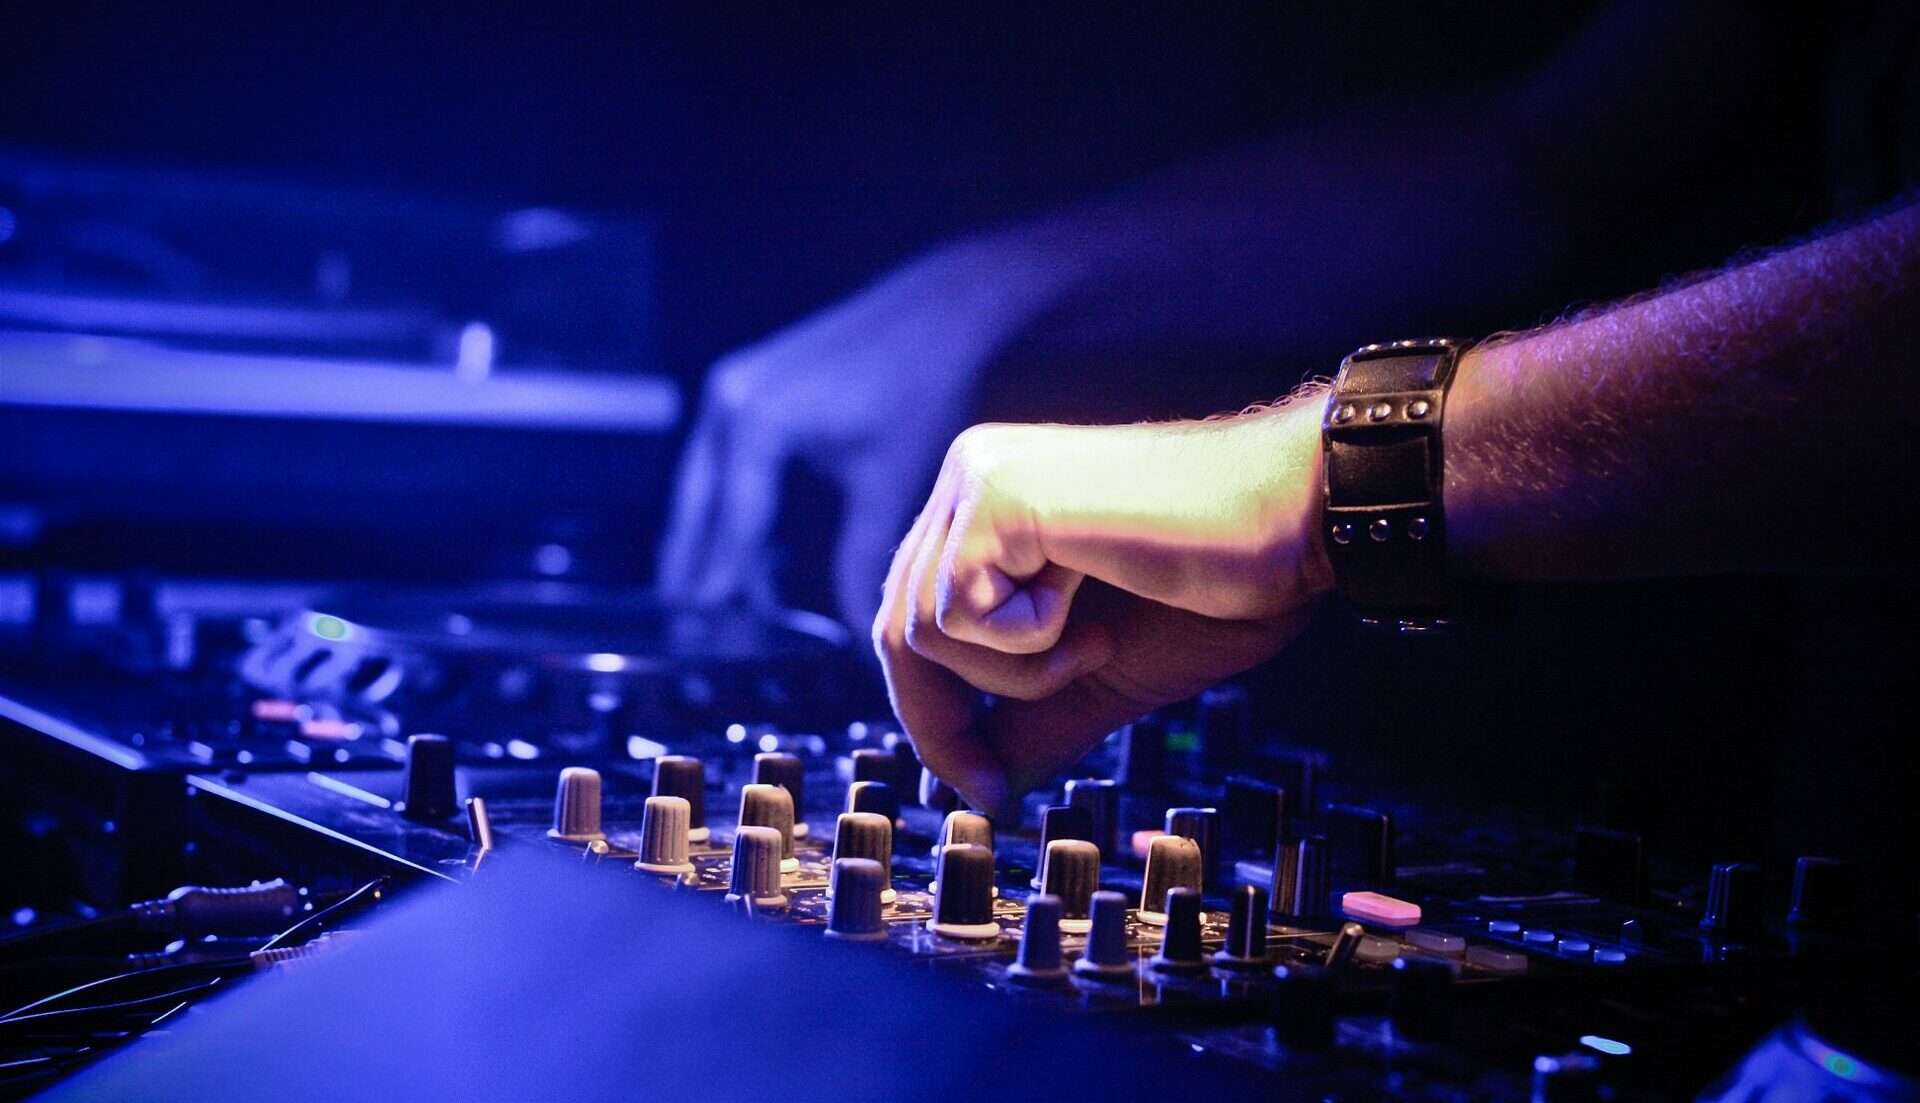 Le matériel des DJs professionnels - Devenir DJ